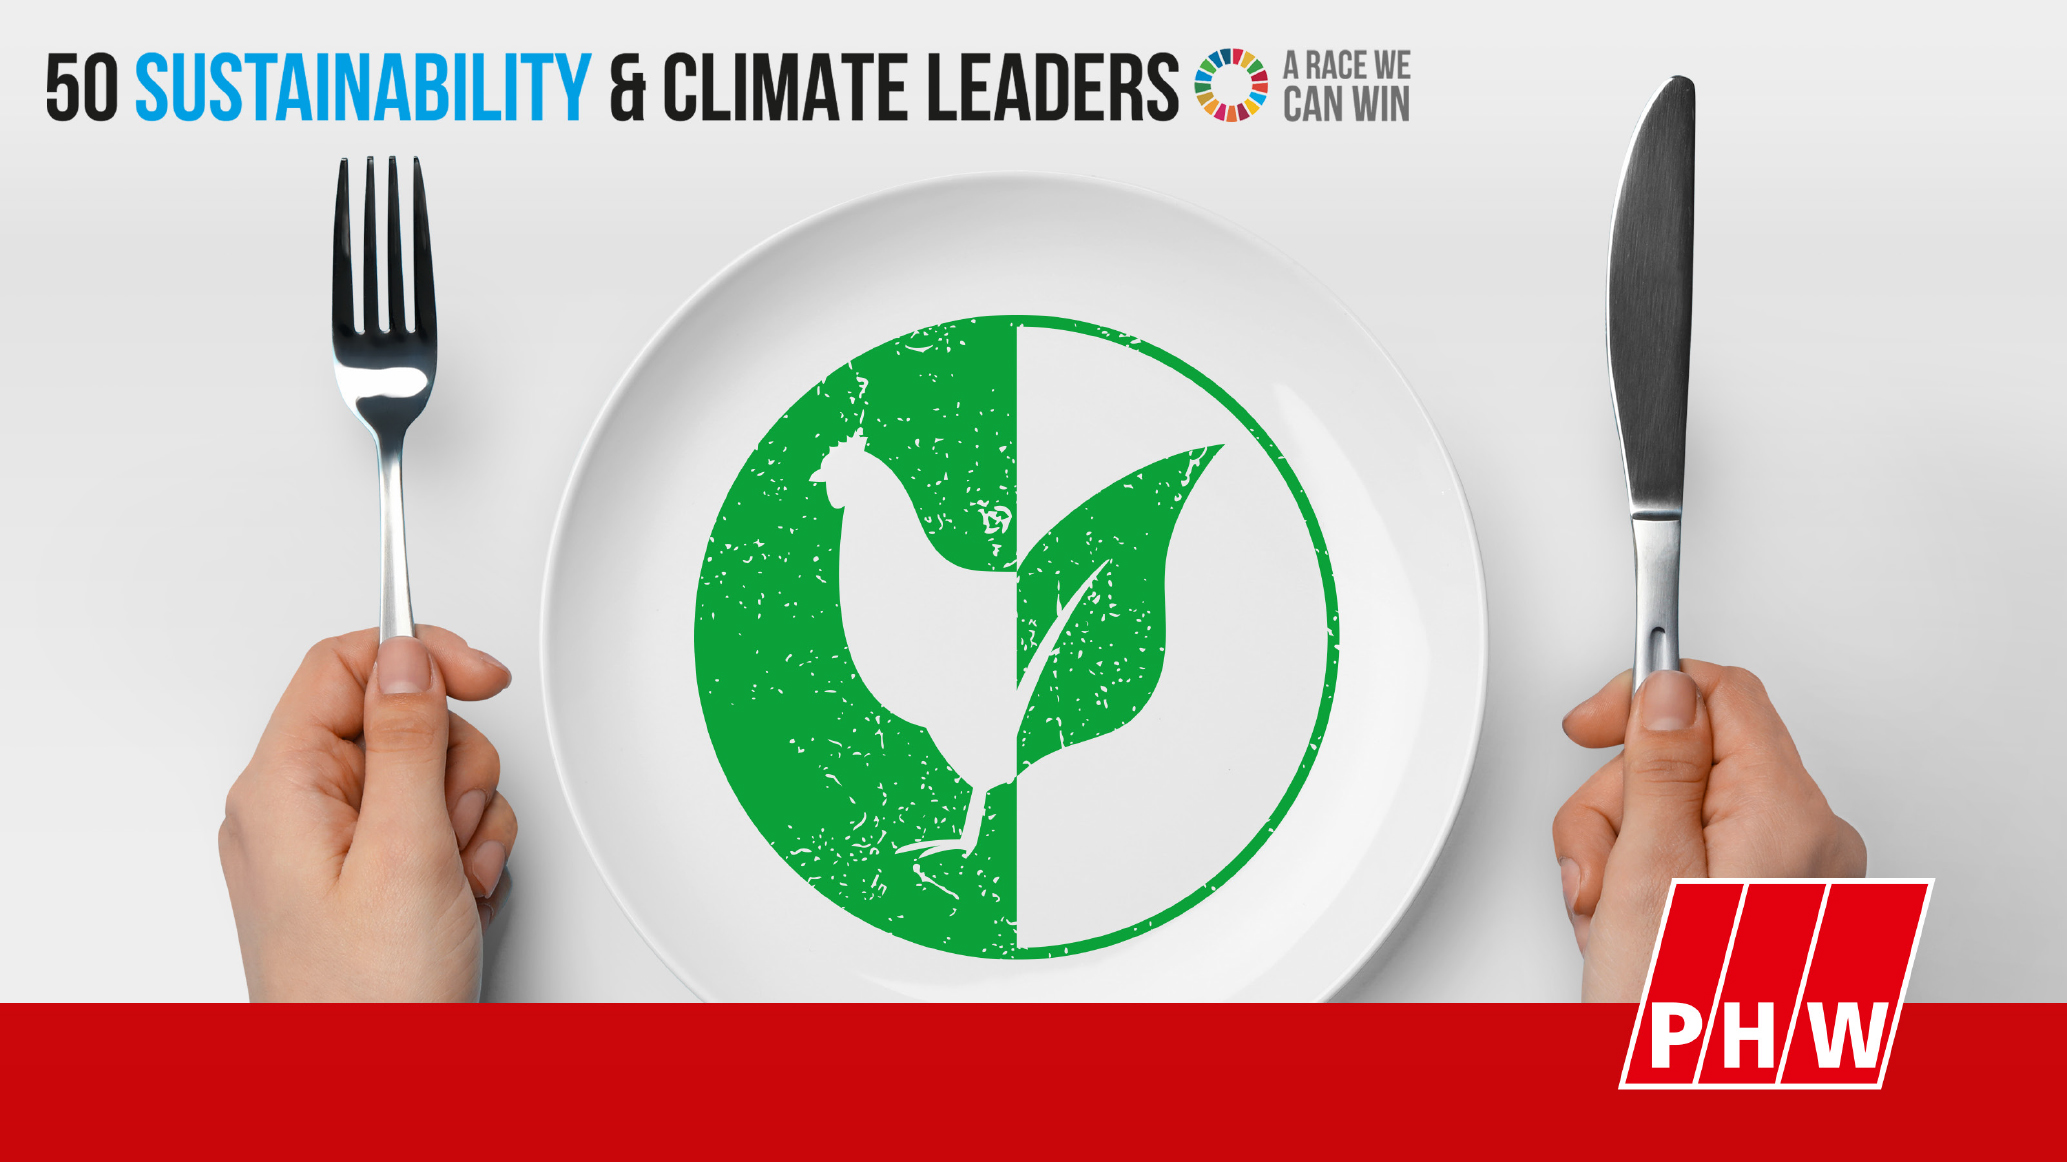 Internationale Würdigung des Nachhaltigkeitsengagements: PHW-Gruppe gehört weltweit zu den „50 Sustainability & Climate Leaders“